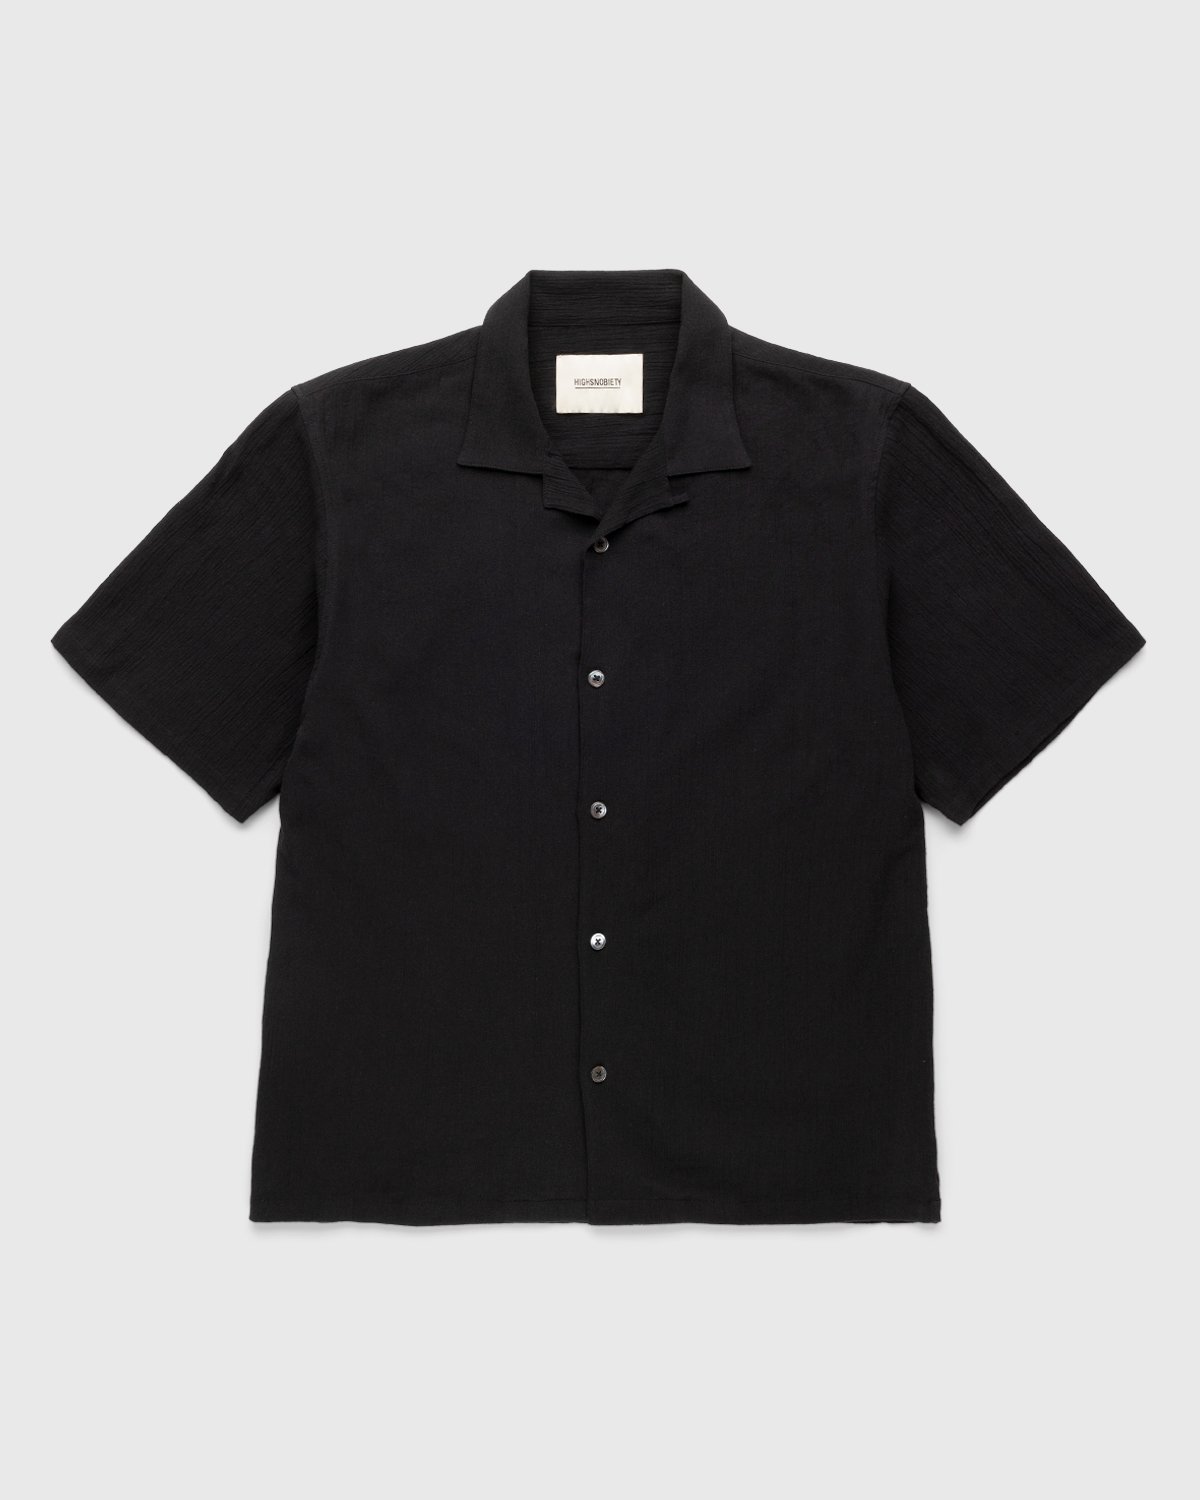 Highsnobiety - Crepe Short Sleeve Shirt Black - Clothing - Black - Image 1